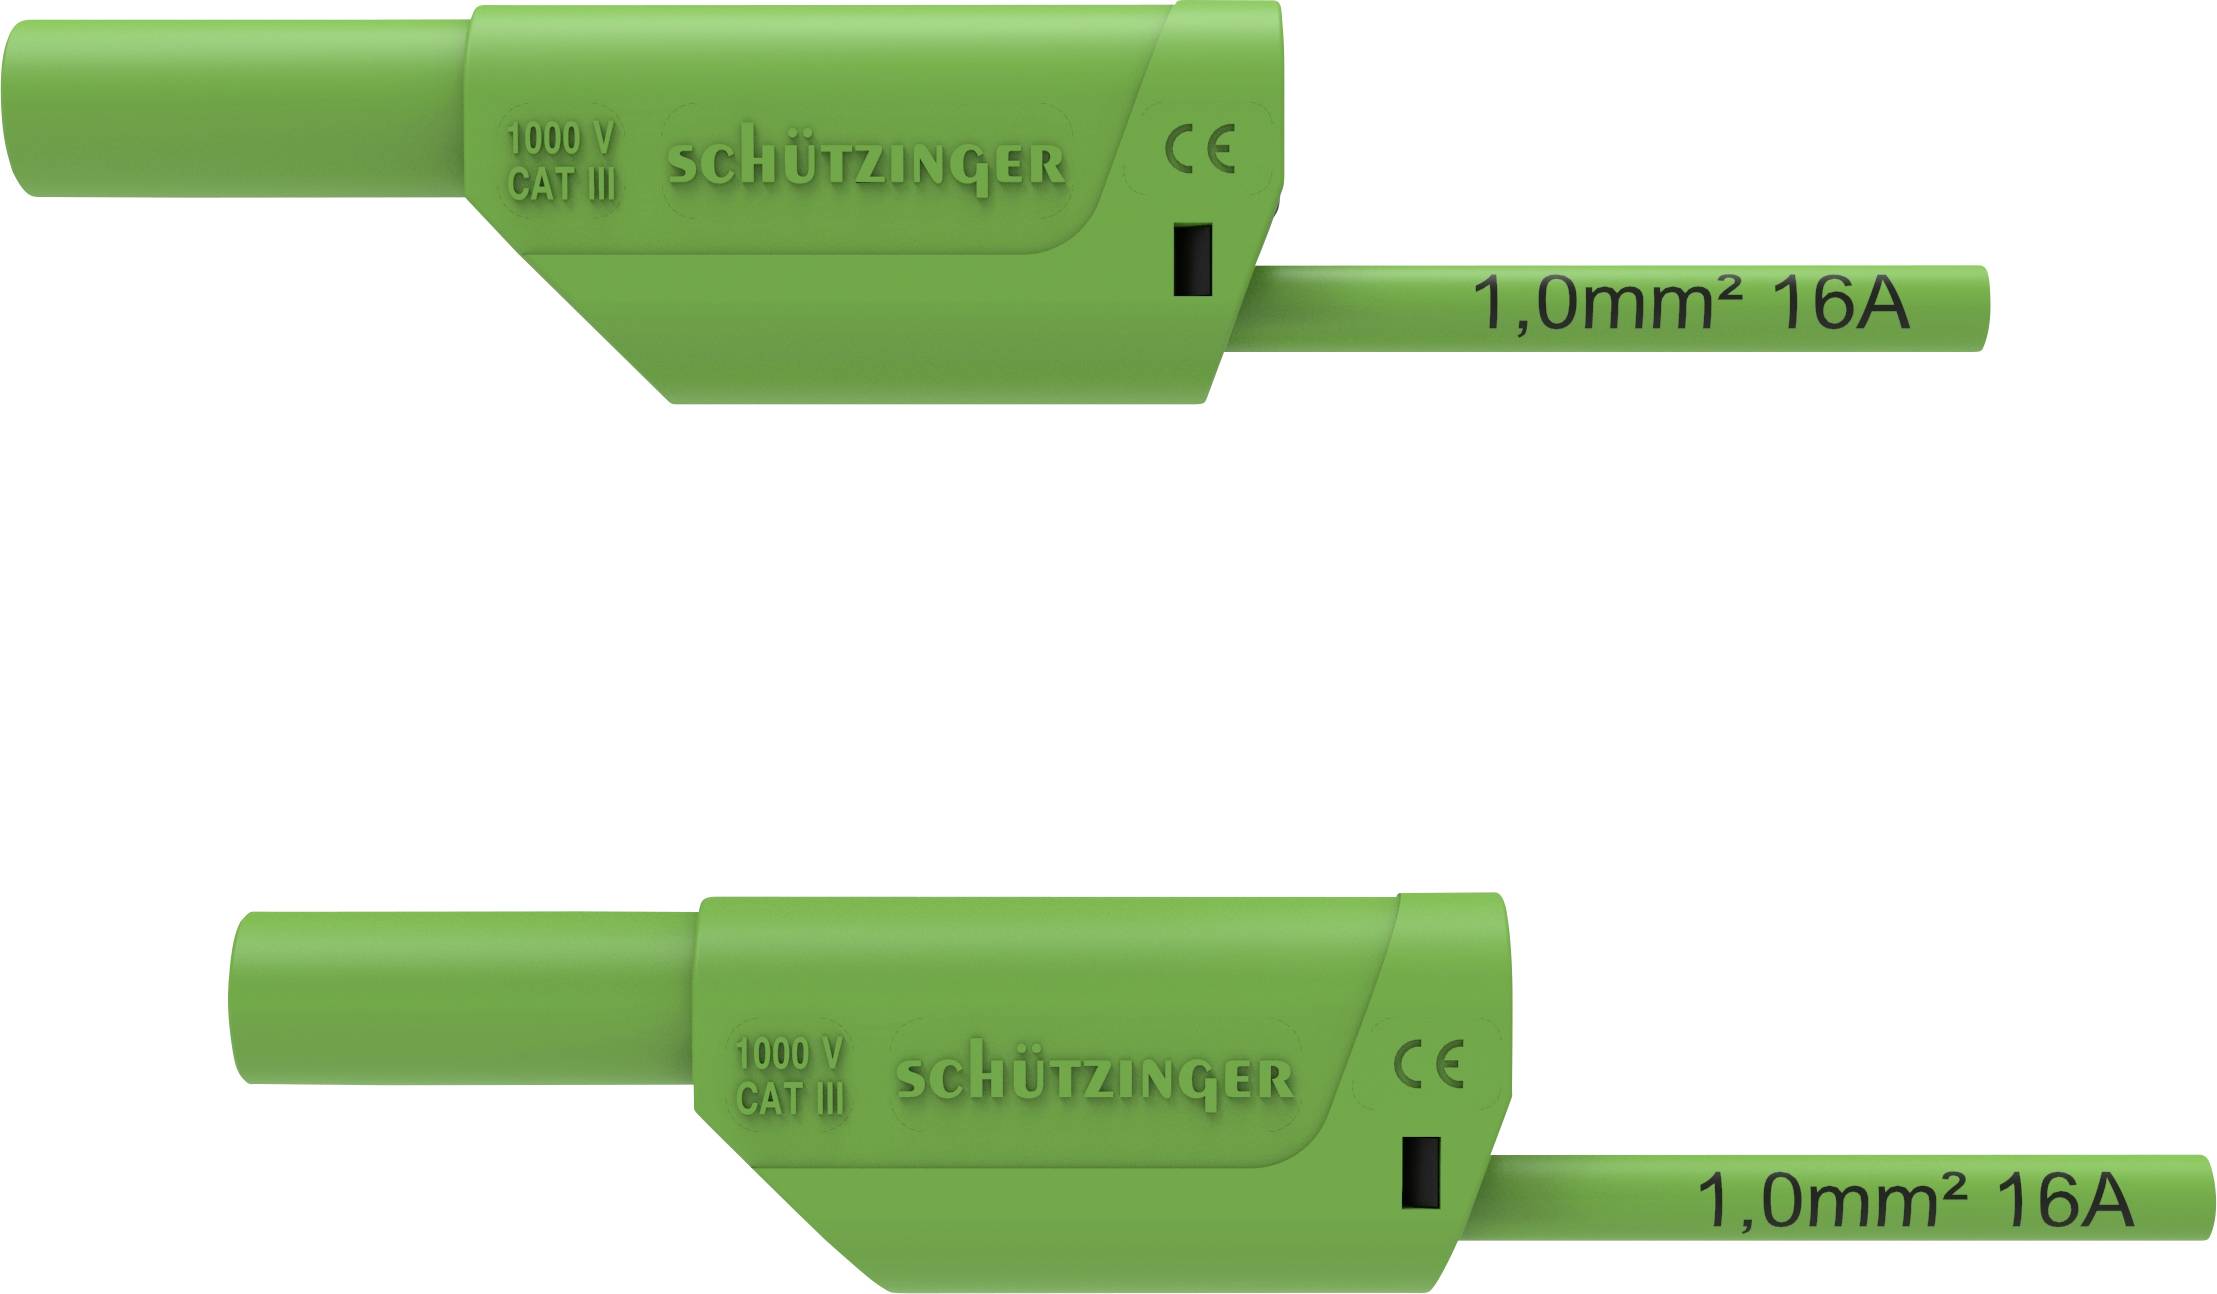 SCHÜTZINGER VSFK 8700 / 1 / 200 / GN Sicherheits-Messleitung [4 mm-Stecker - 4 mm-Stecker] 200.